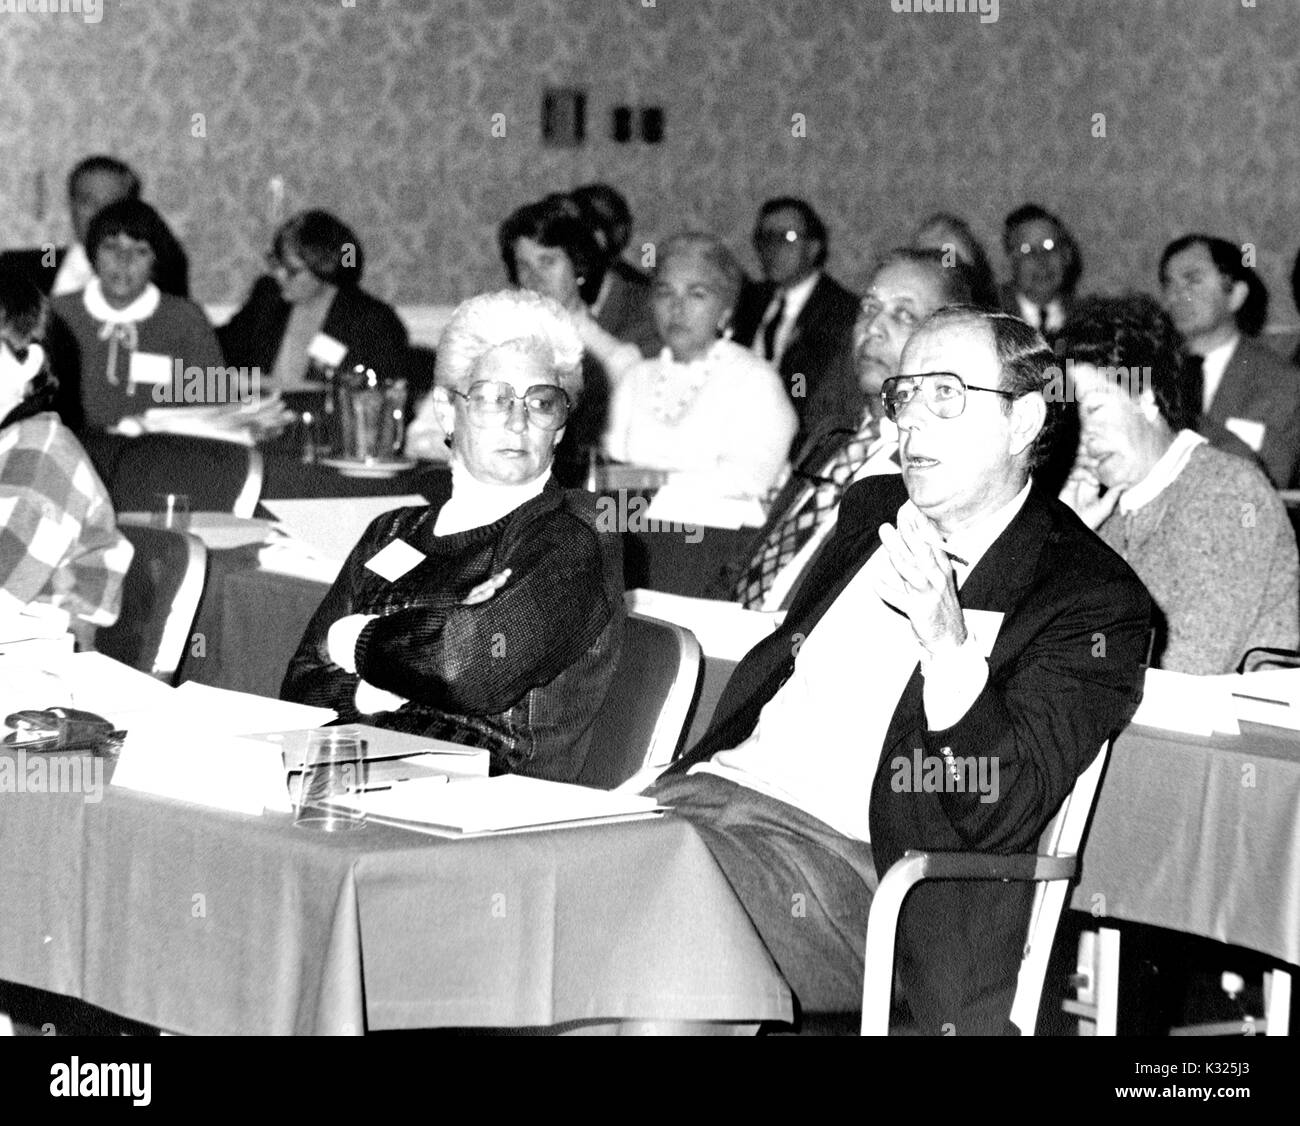 Während einer Kampagne für Johns Hopkins Universität, Fakultät und Mitarbeiter an Tischen, die in einem Konferenzsaal sitzen, während Dimitri V d'Arbeloff - Erde und Planetary Science Scholar an der Johns Hopkins - sitzt in seinem Stuhl zurück, in Anzug und Brille, schlägt eine Bewegung in Richtung der Kopf der Zimmer, Baltimore, Maryland, 1983. Stockfoto